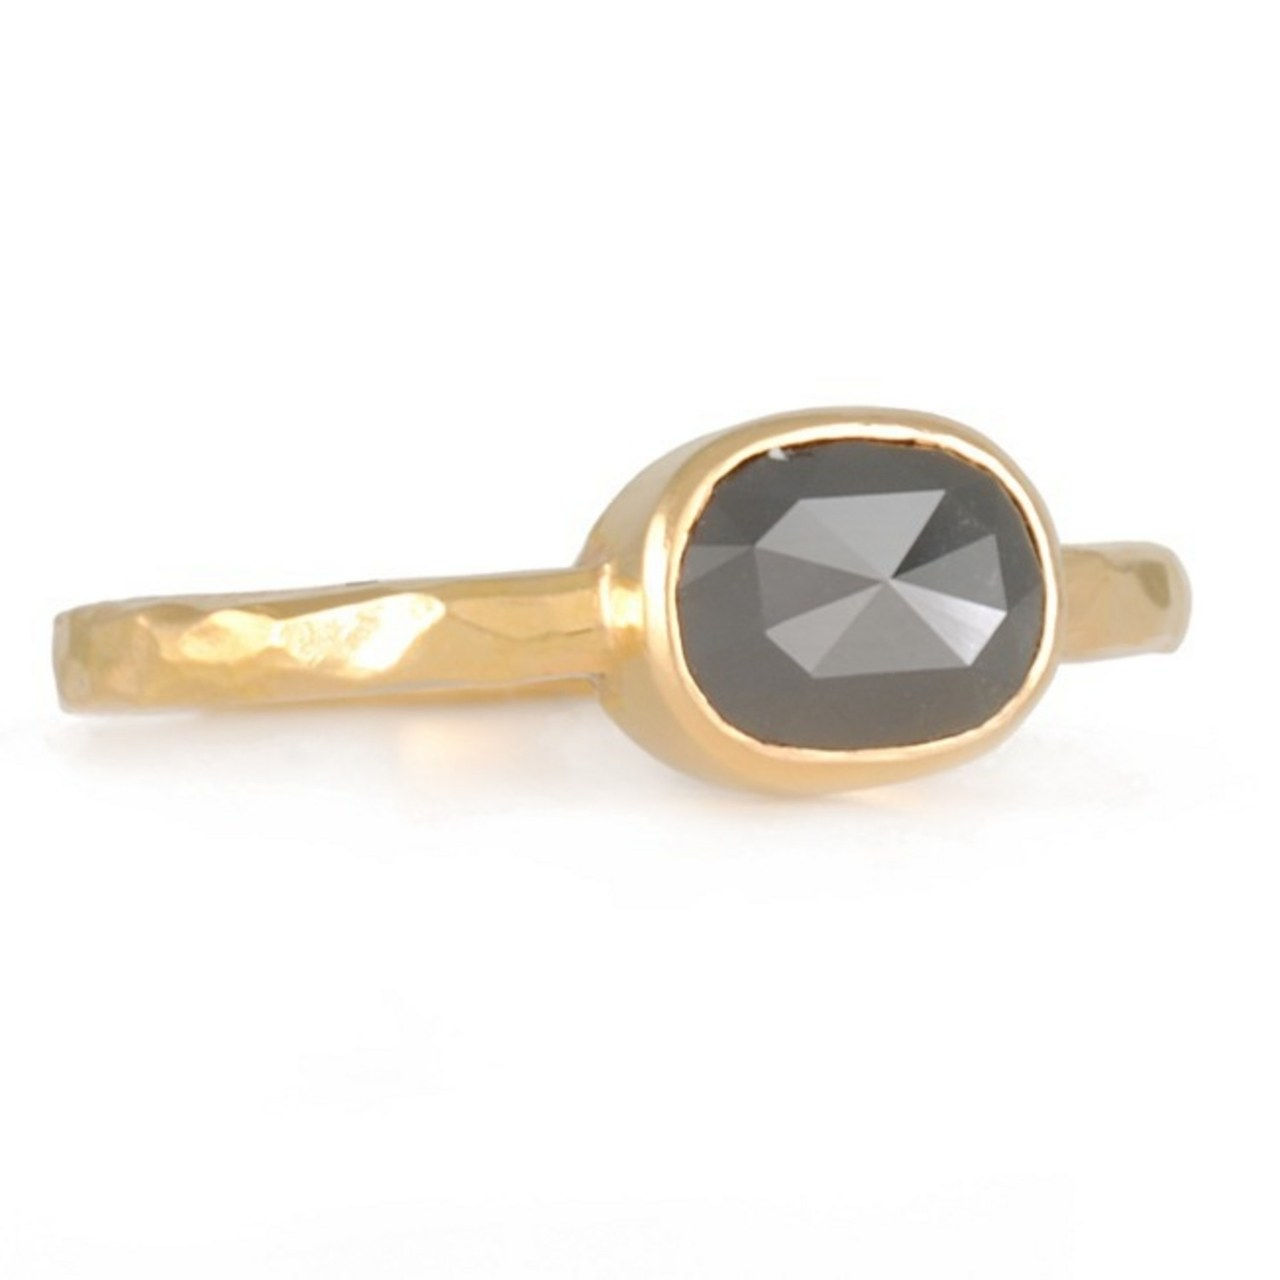 1 engagement rings inspired by kat von d black diamond skull 1218